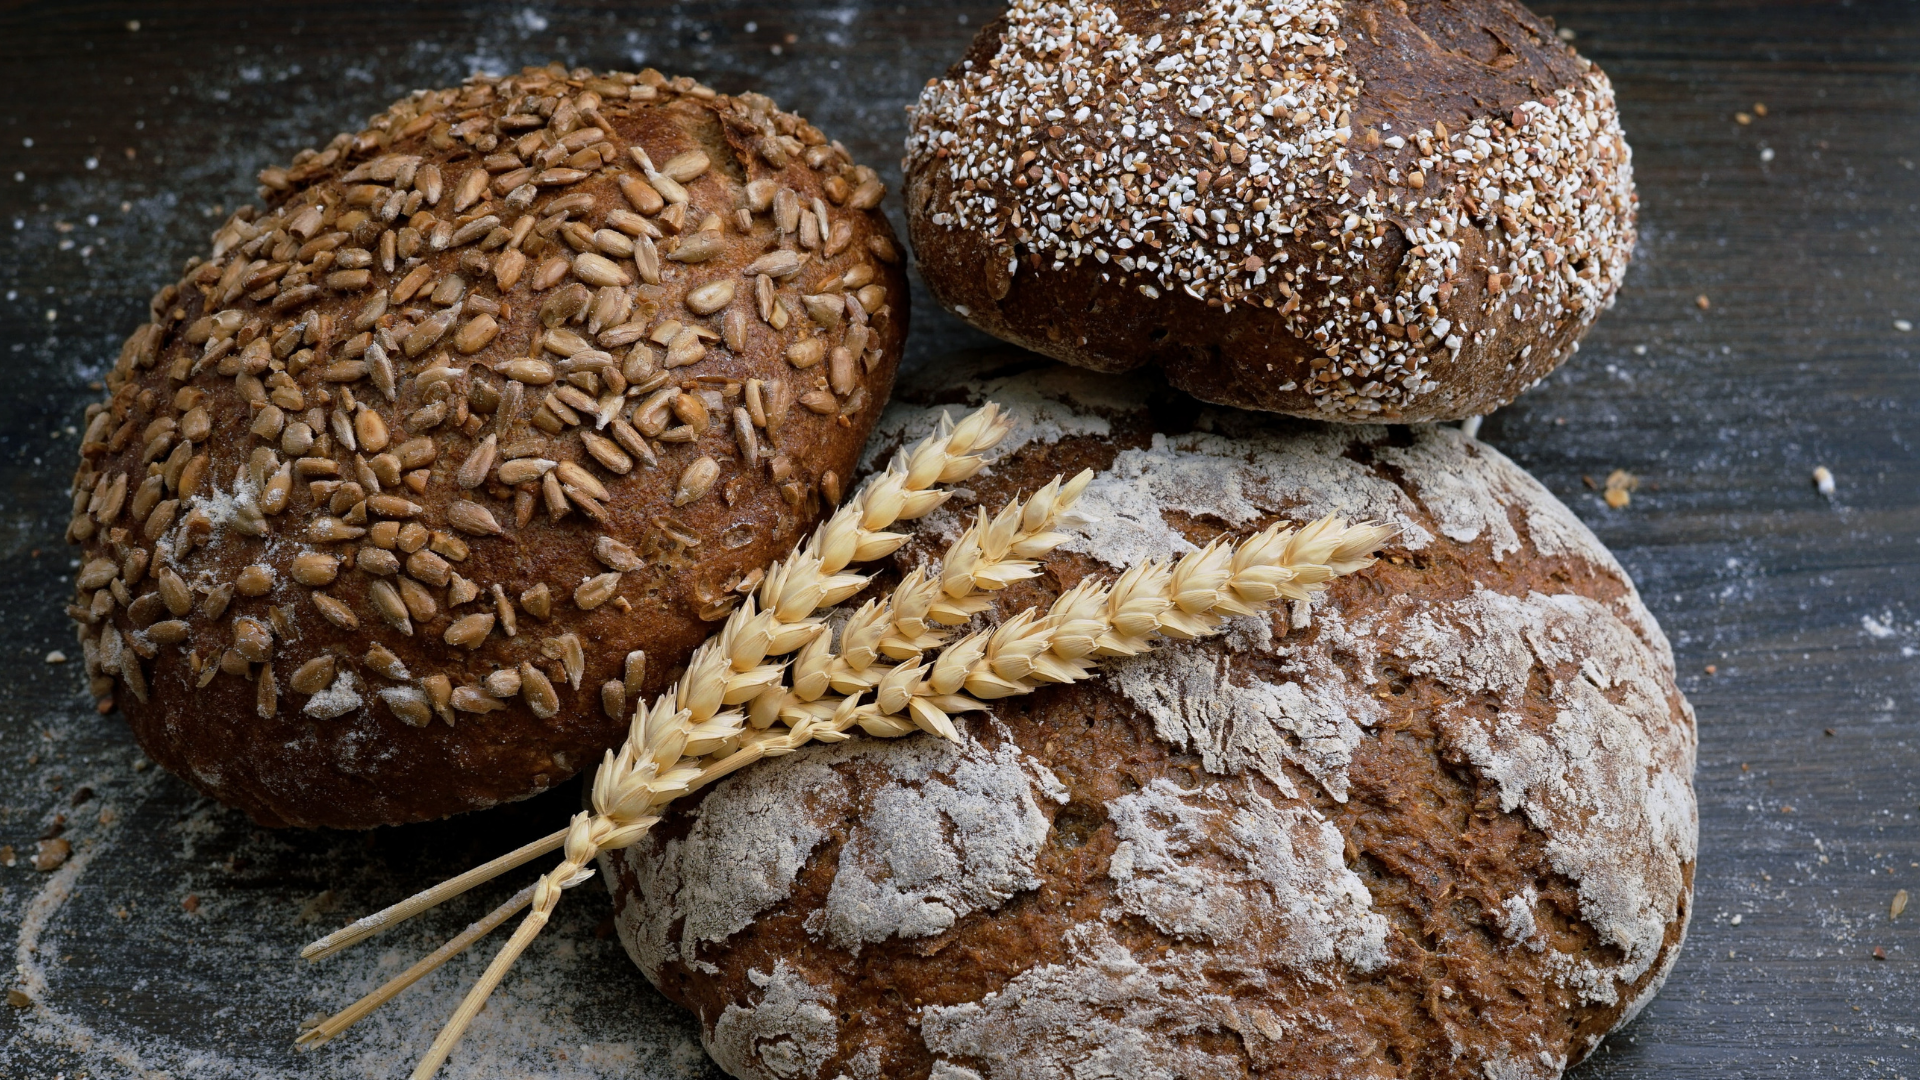 Foto de capa do artigo "Pão integral engorda? É melhor que pão branco? Quanto comer?"